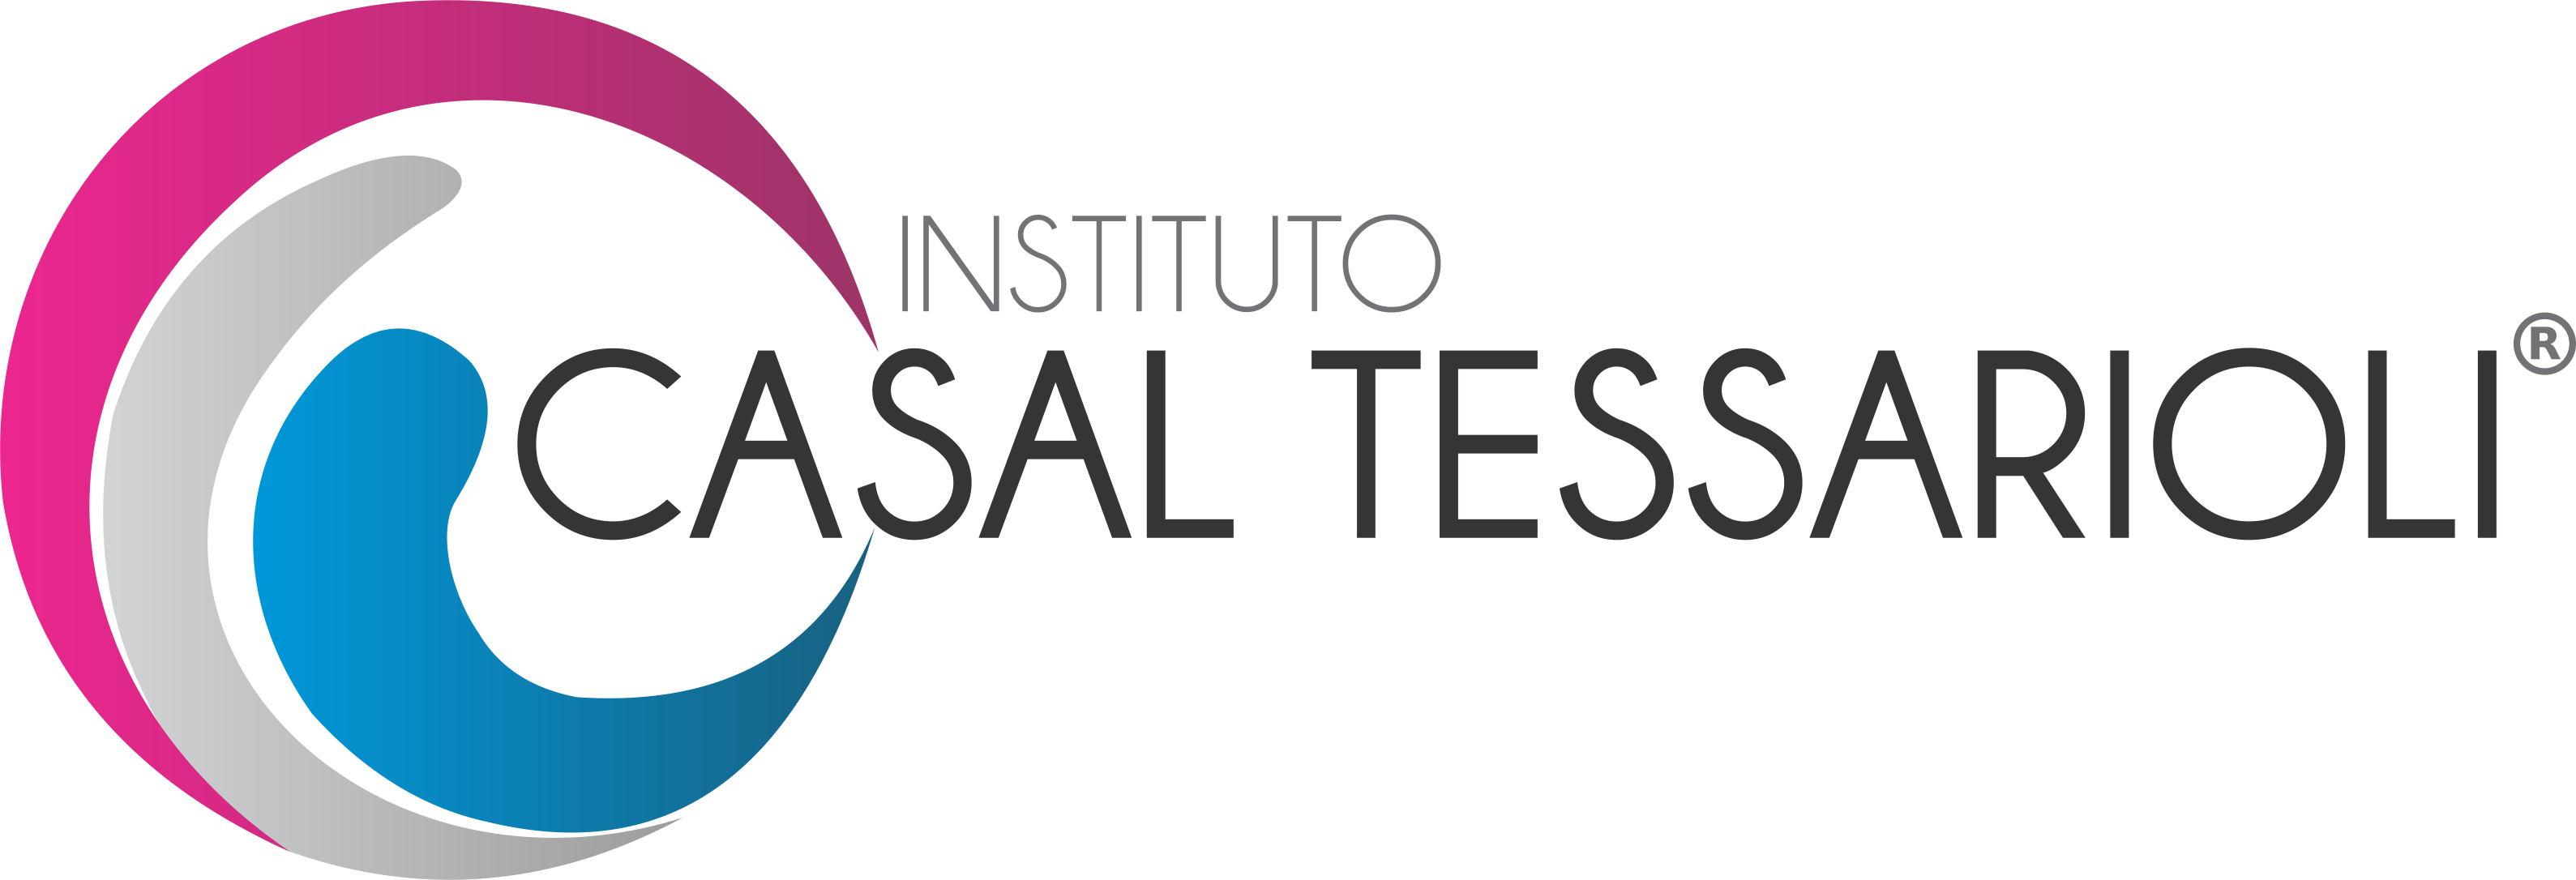 Instituto Casal Tessarioli